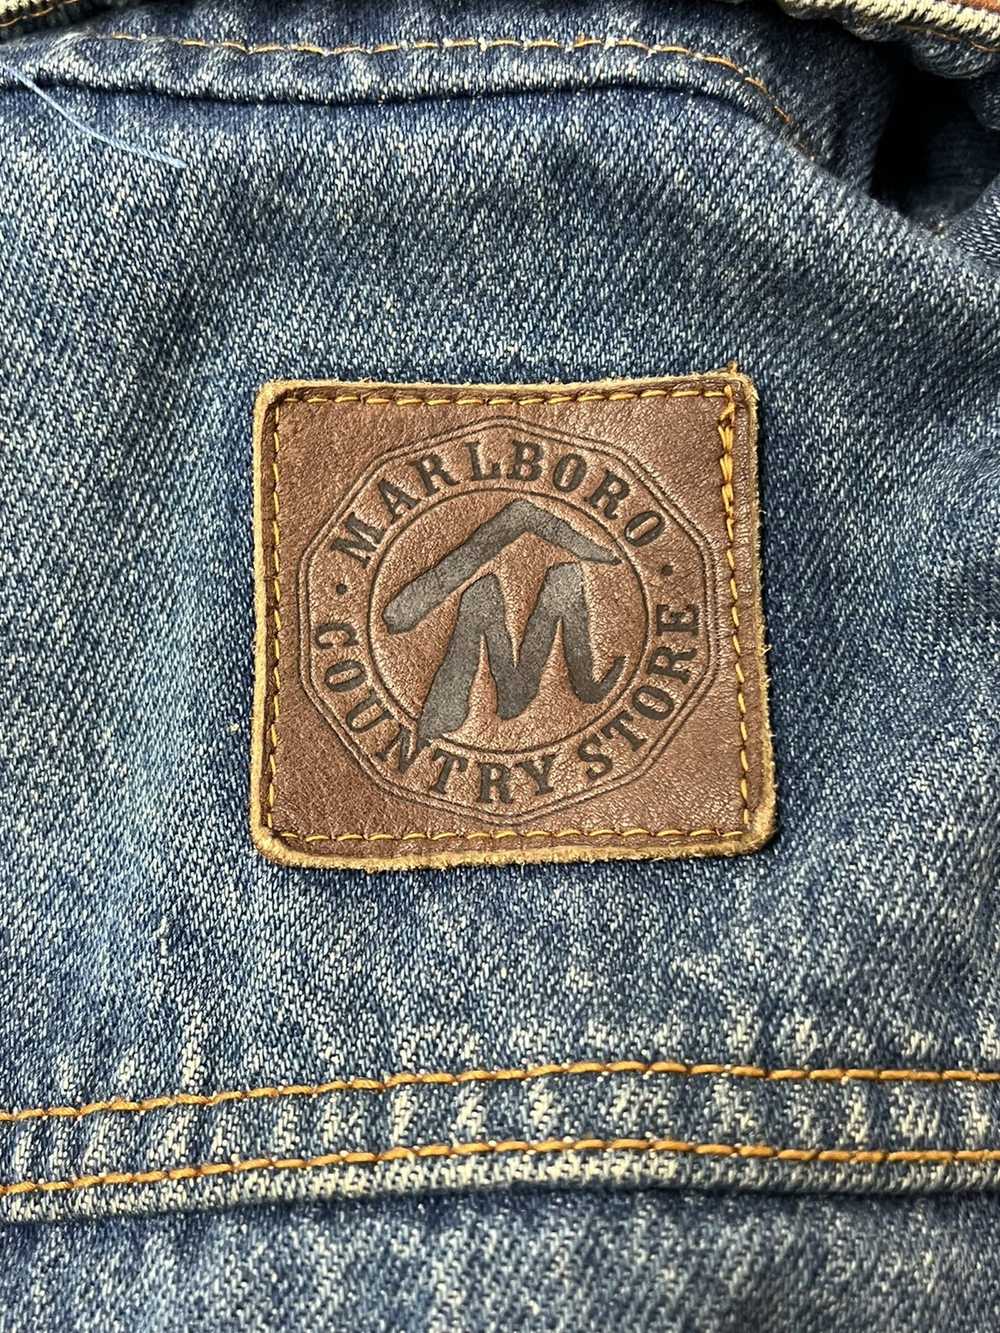 Denim Jacket × Marlboro × Vintage Vintage Marlbor… - image 3